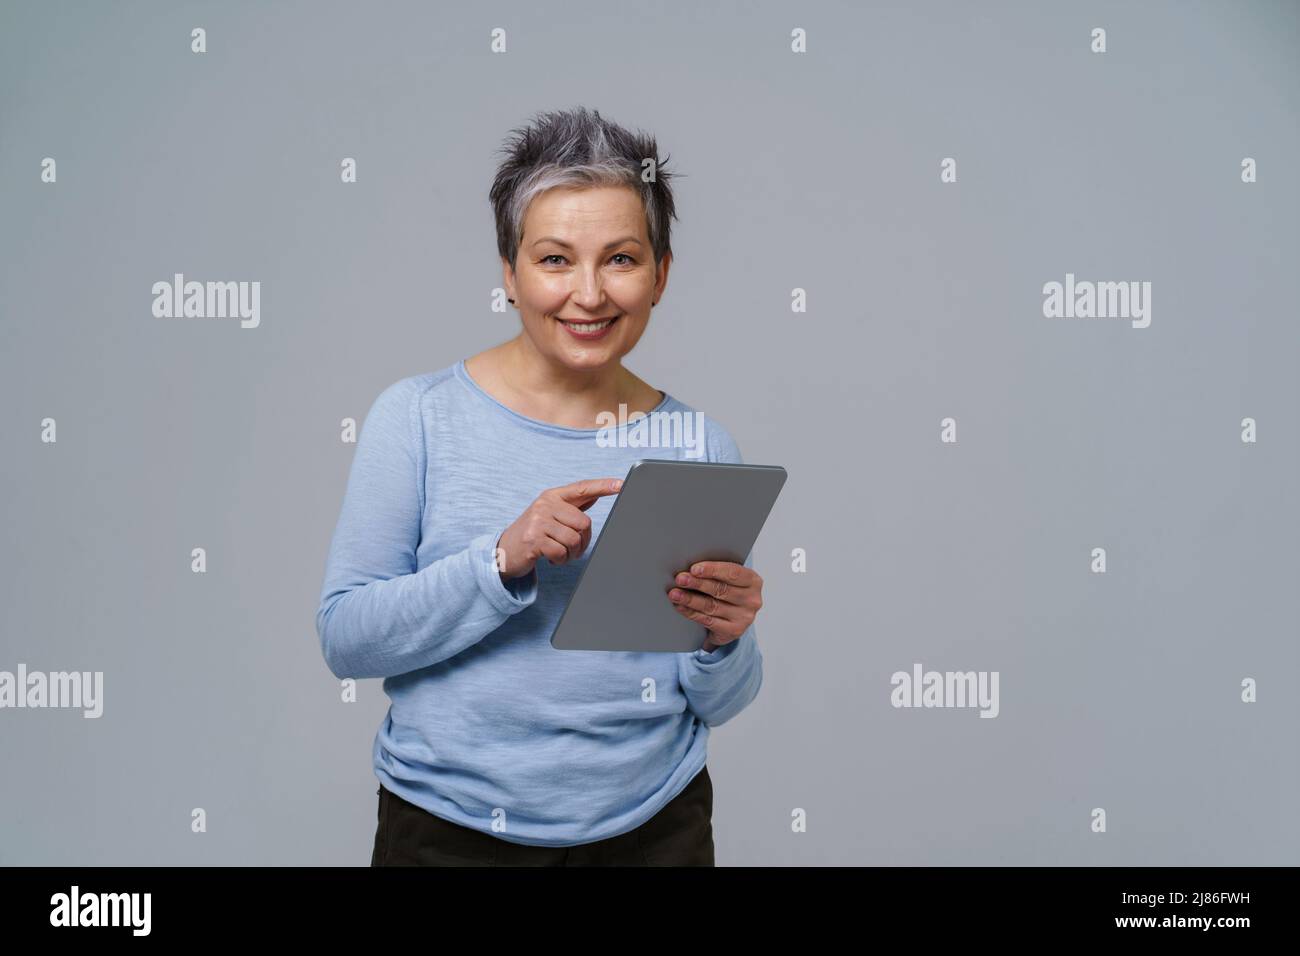 Lächelnde reife grauhaarige Frau 50s hält digitales Tablet bei der Arbeit oder beim Prüfen in sozialen Medien. Hübsche Frau im Jahr 50s in blauer Bluse isoliert auf weiß. Ältere Menschen und Technologien. Getöntes Bild. Stockfoto